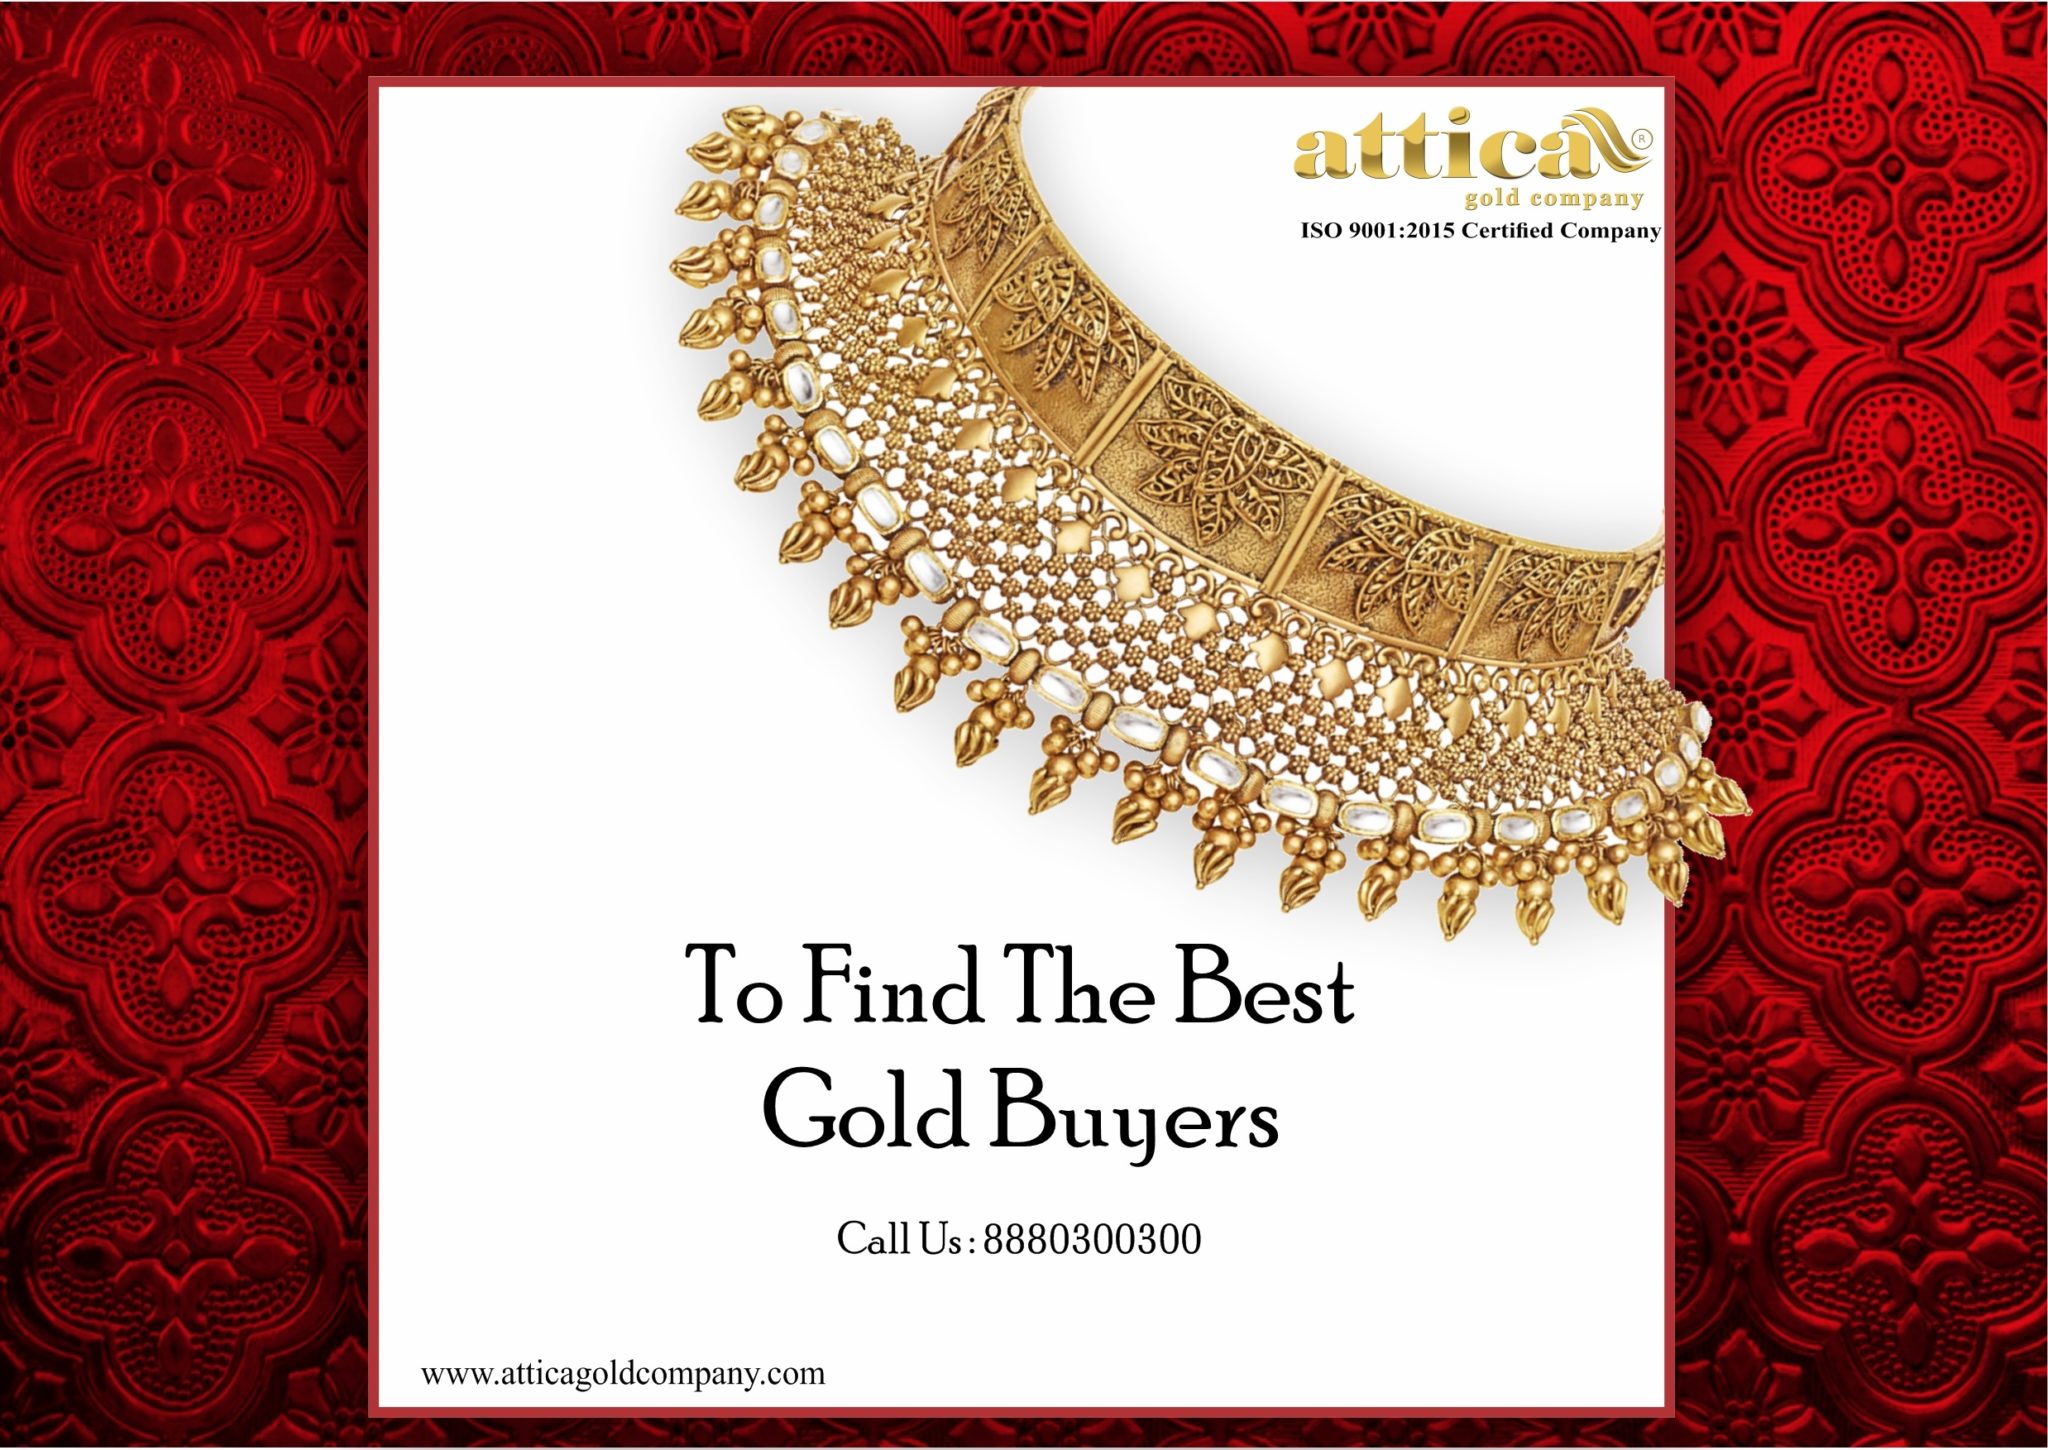 Attica gold buyersBest Gold BuyersSell Gold near meCash for GoldGold